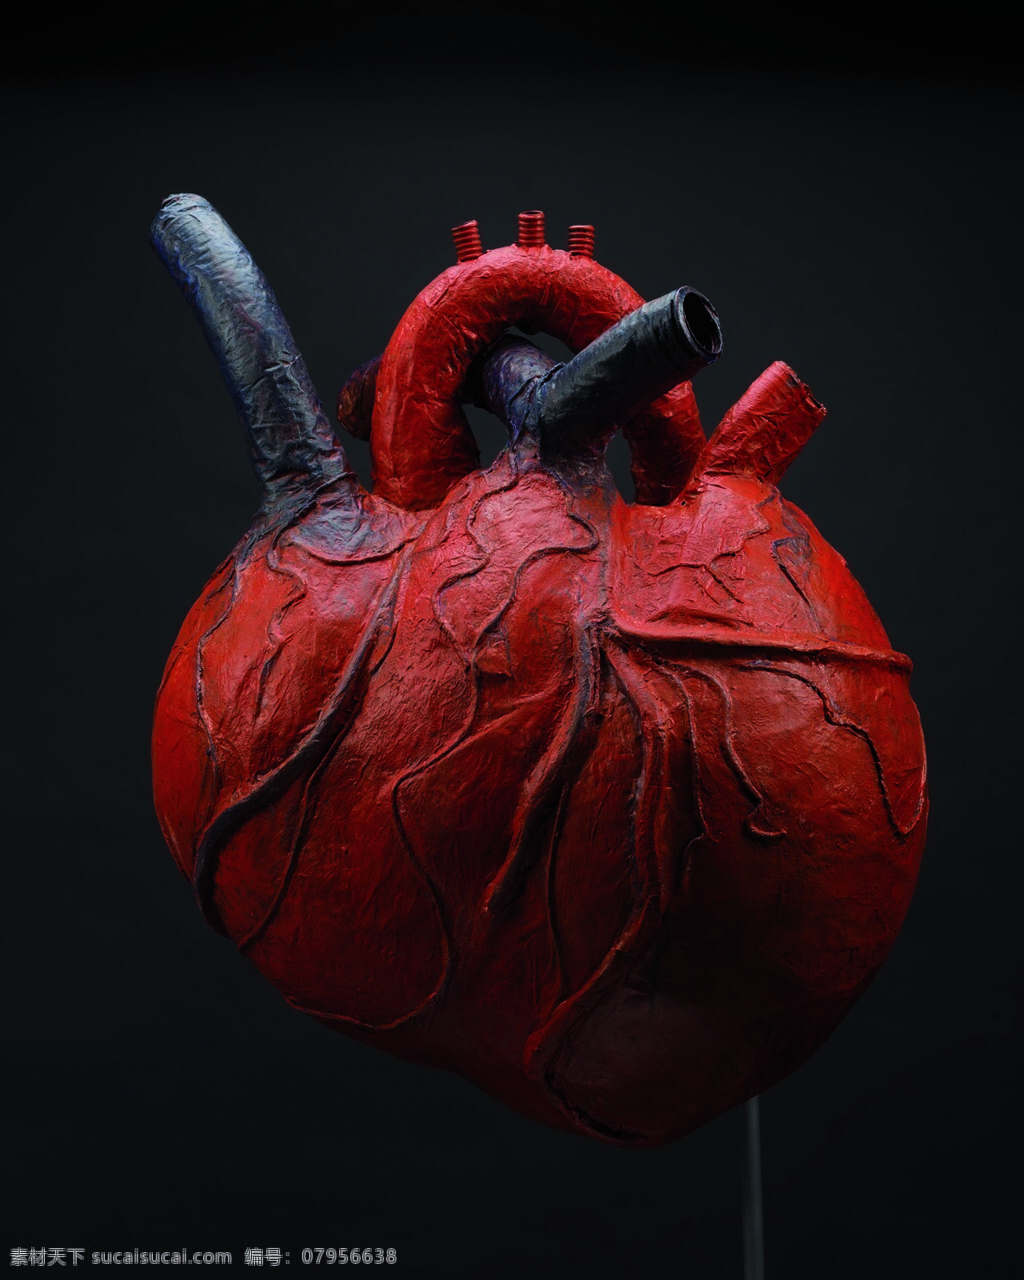 机器心脏 机器 心脏 内脏 红色 血 恐怖 人体 科技 未来 智能 机器人 手术 医生 医院 医疗护理 现代科技